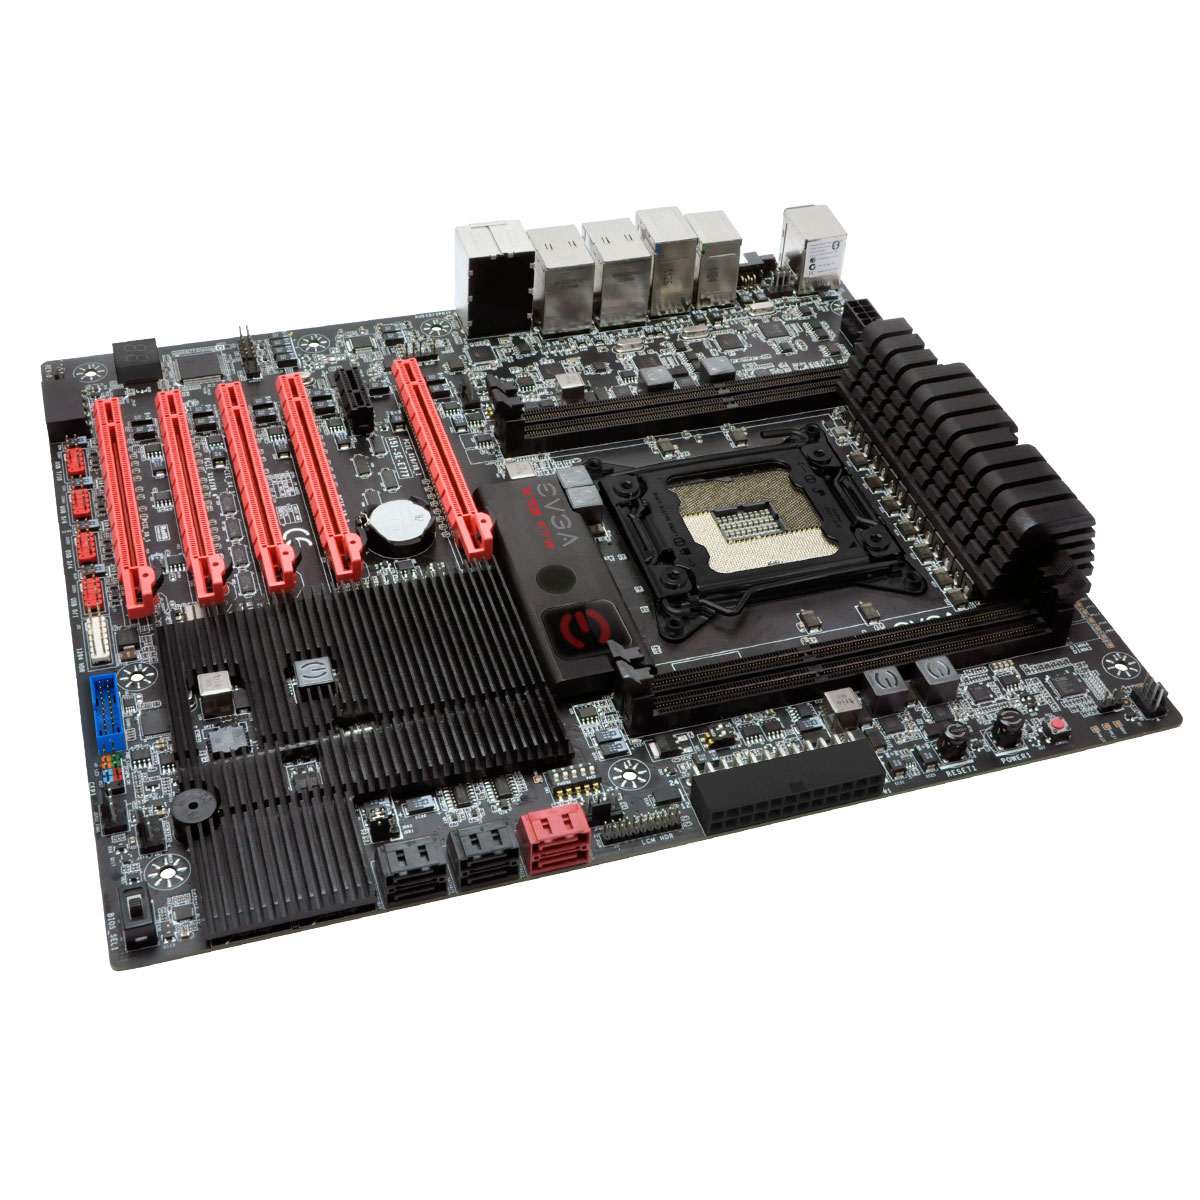 BIOS Chip EVGA X79 FTW 151-SE-E777-K2 